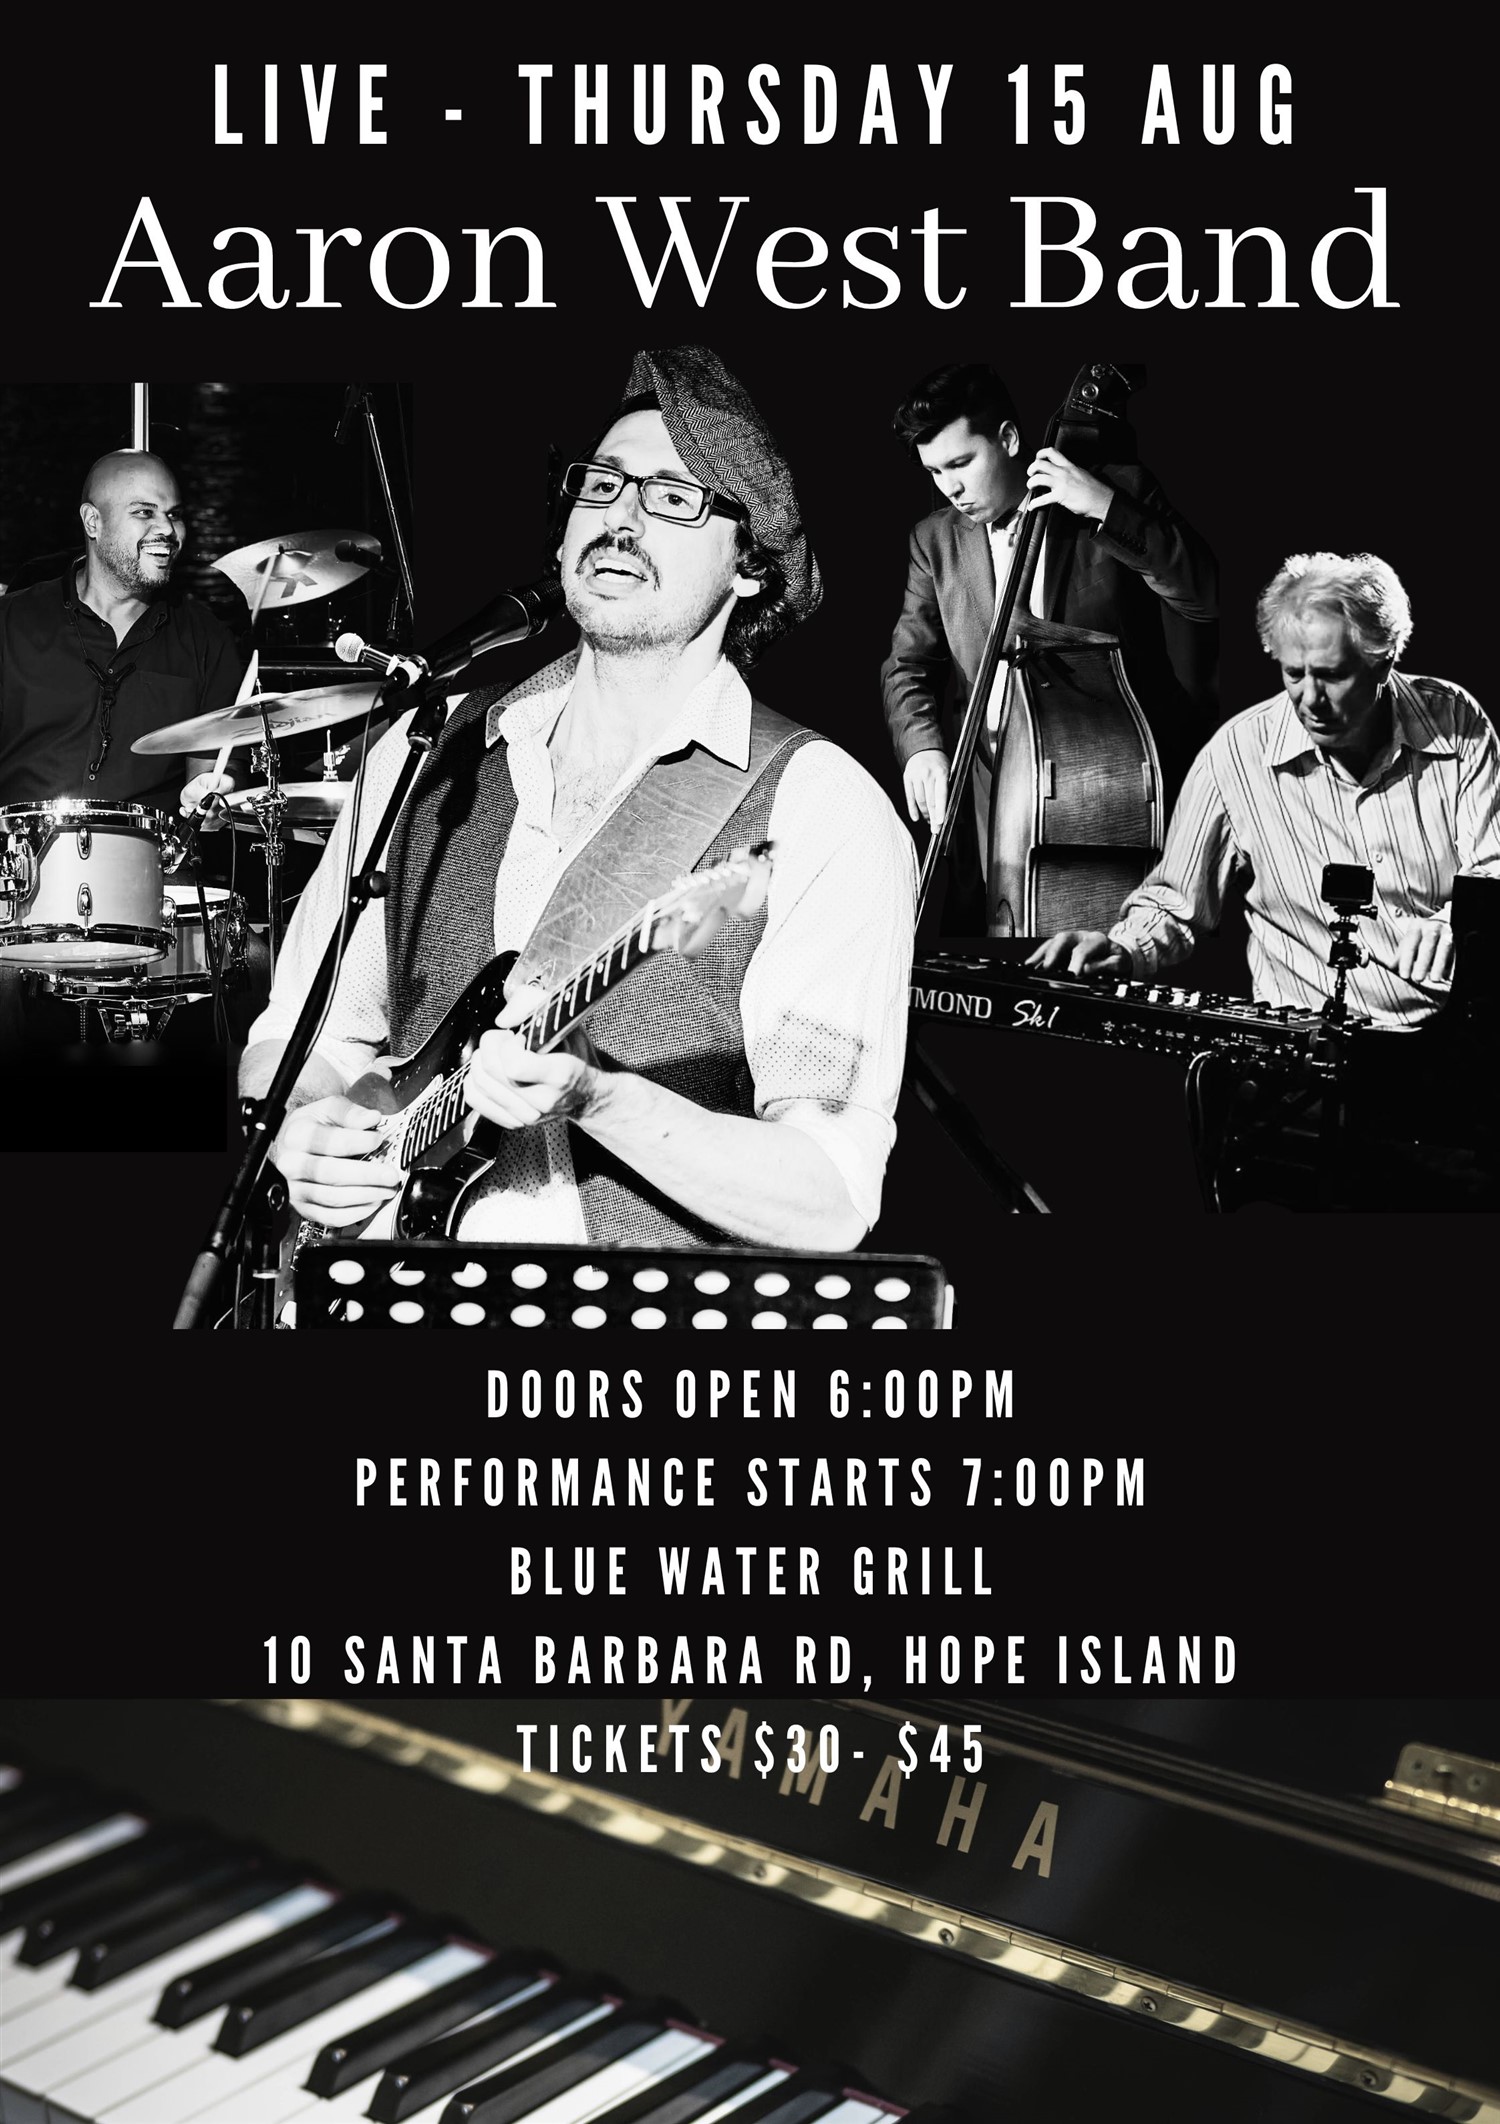 Aaron West Band  on ago. 15, 18:00@Hope Island Jazz - Blue Water Grill - Compra entradas y obtén información enHope Island Jazz hopeislandjazz.com.au